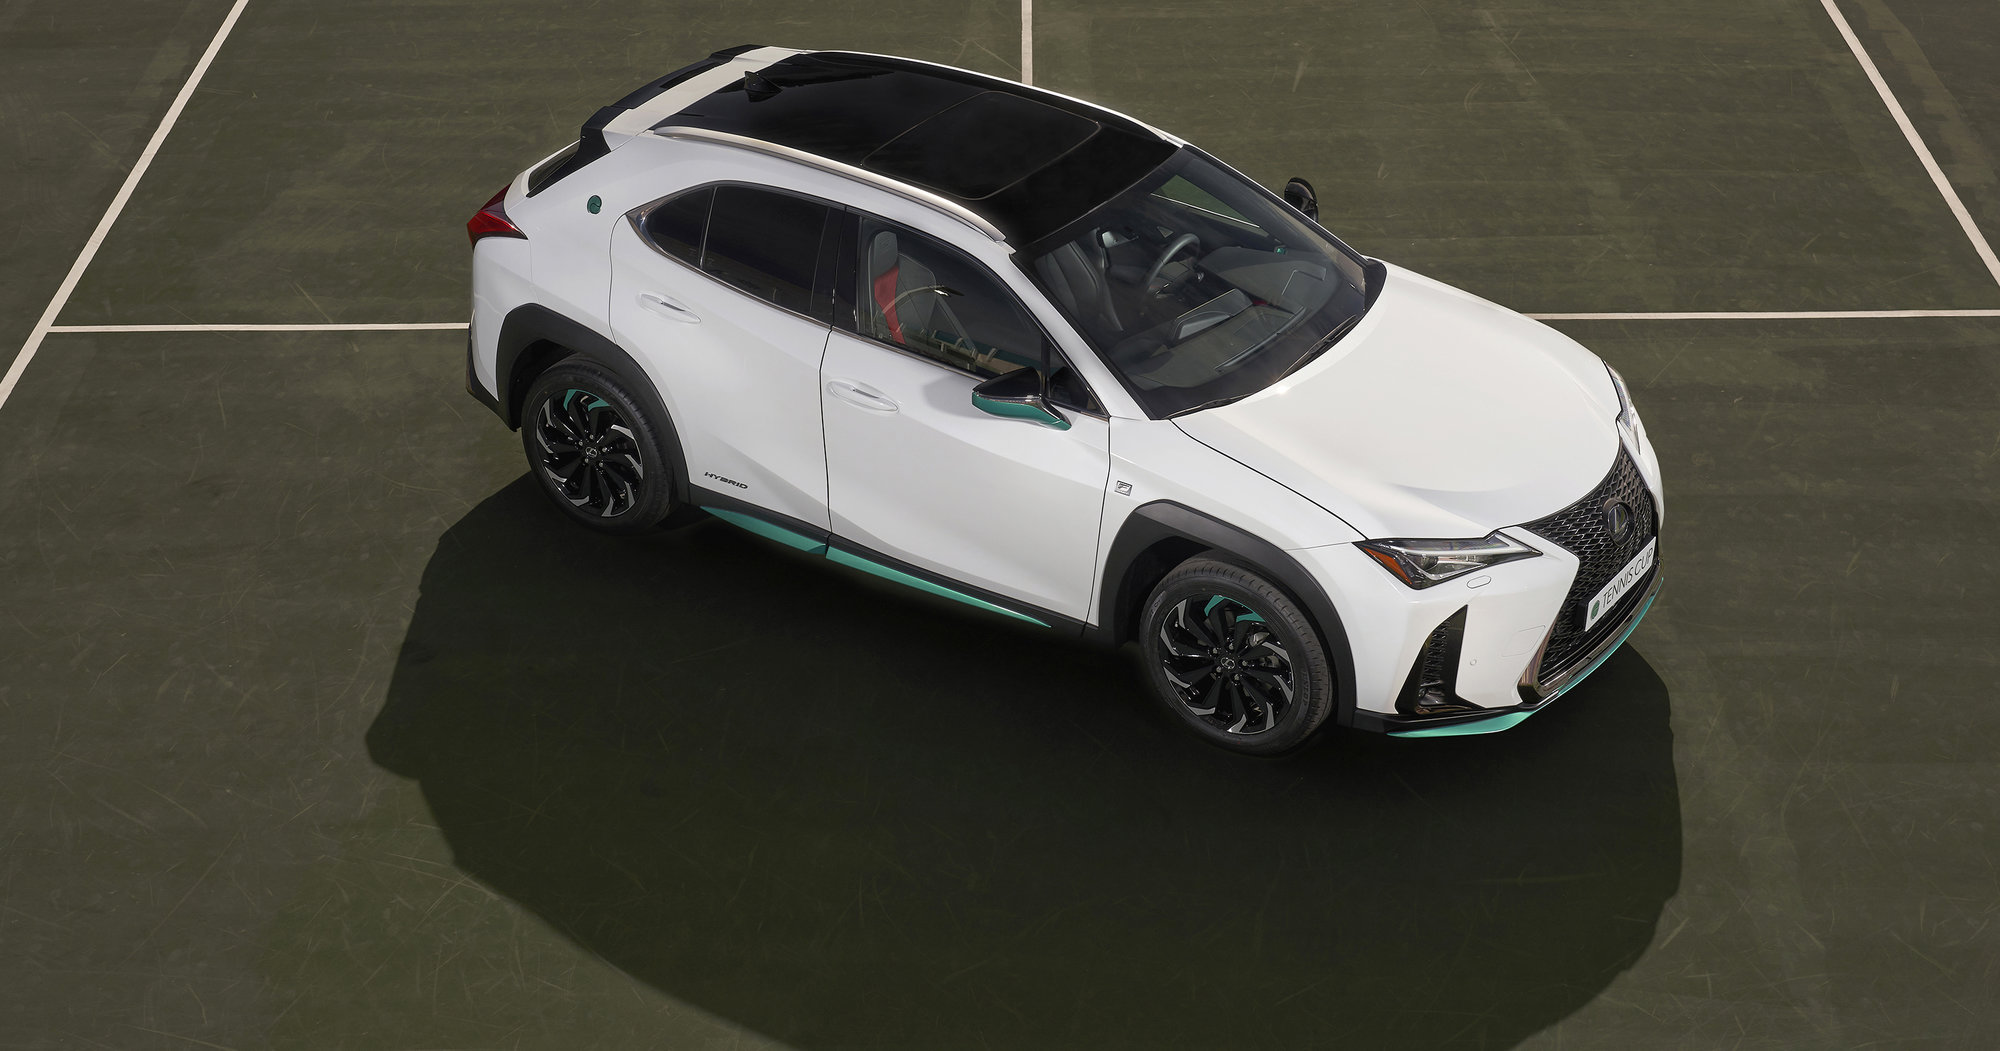 Galería: Lexus crea el nuevo UX 250h Híbrido ‘Tennis Cup’ Edition